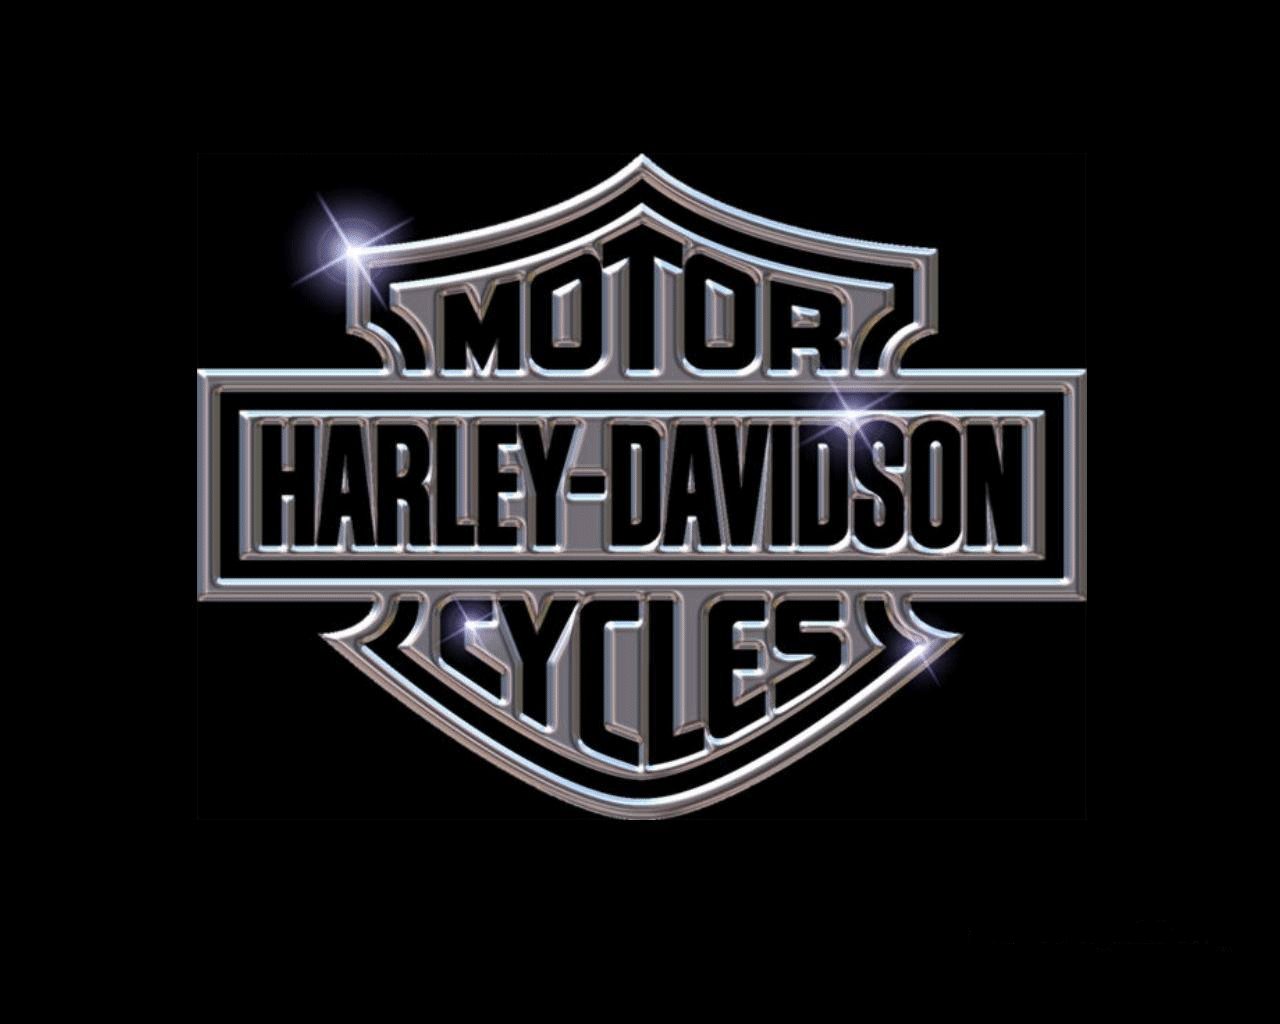 1000 Harley Davidson Wallpaper Harley Davidson Wallpaper